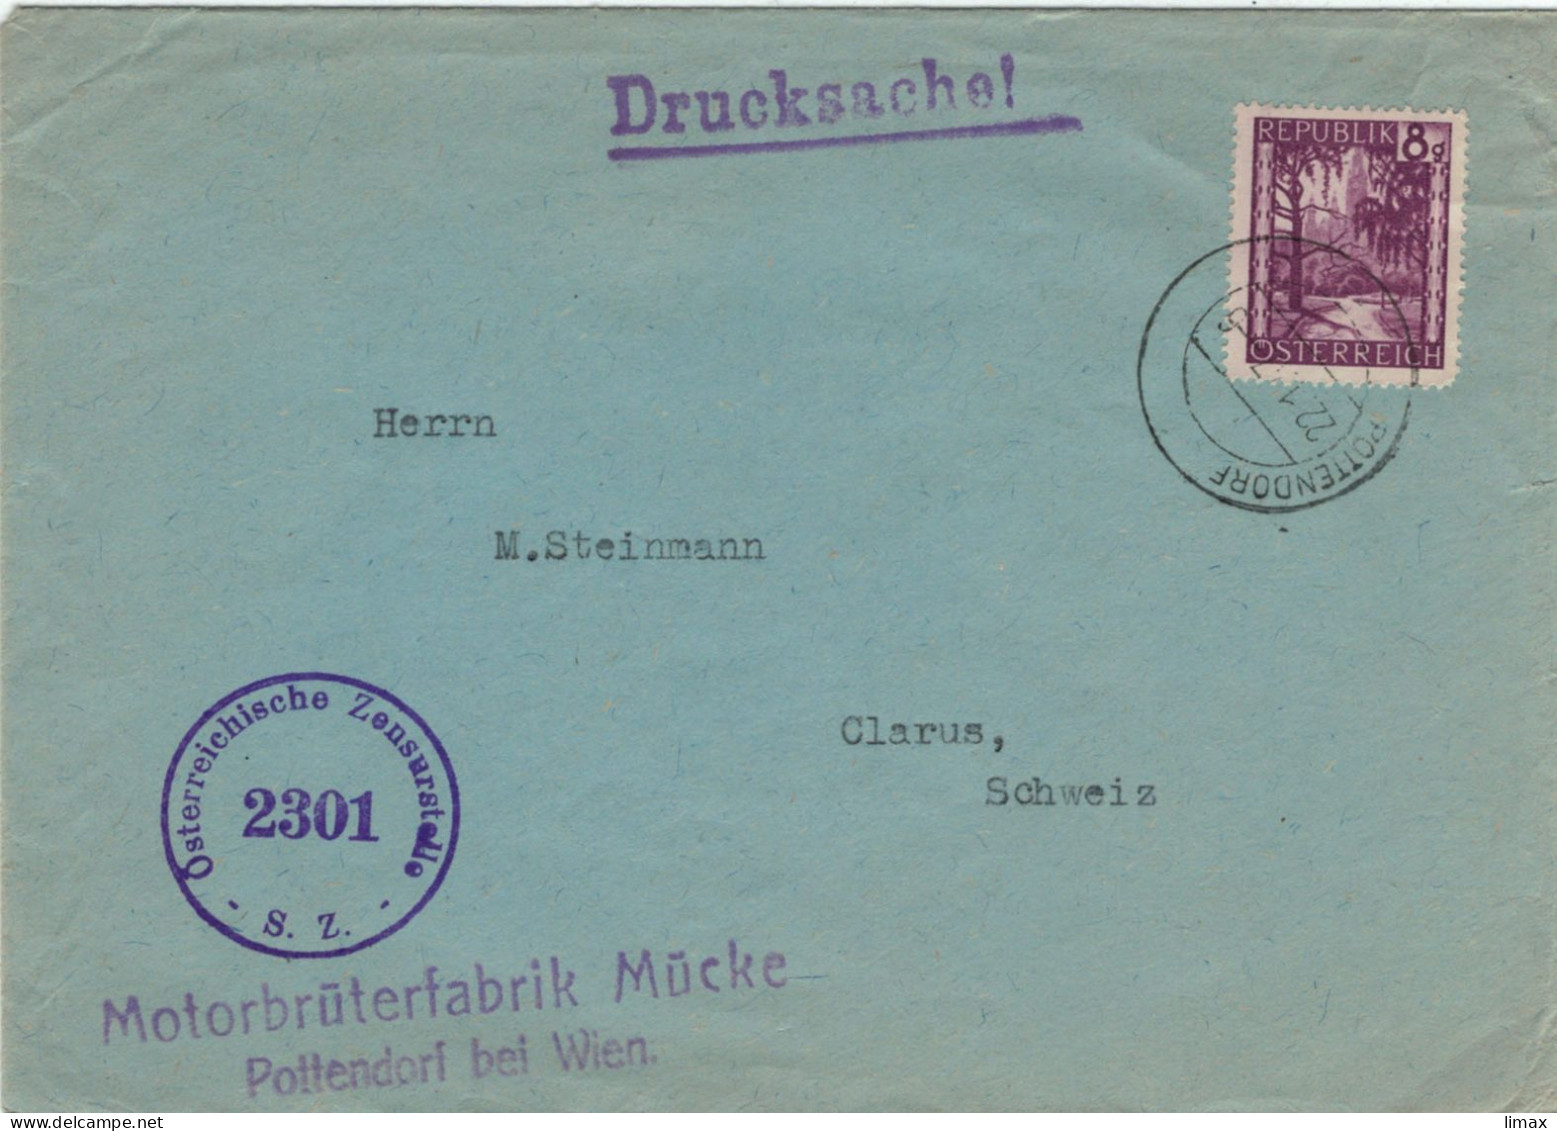 Motorbrüterfabrik Mücke Pottendorf Bei Wien 1947 Zensur 2301 > Glarus - Geflügelzucht Tierschutz Tierleid Skandale - Covers & Documents